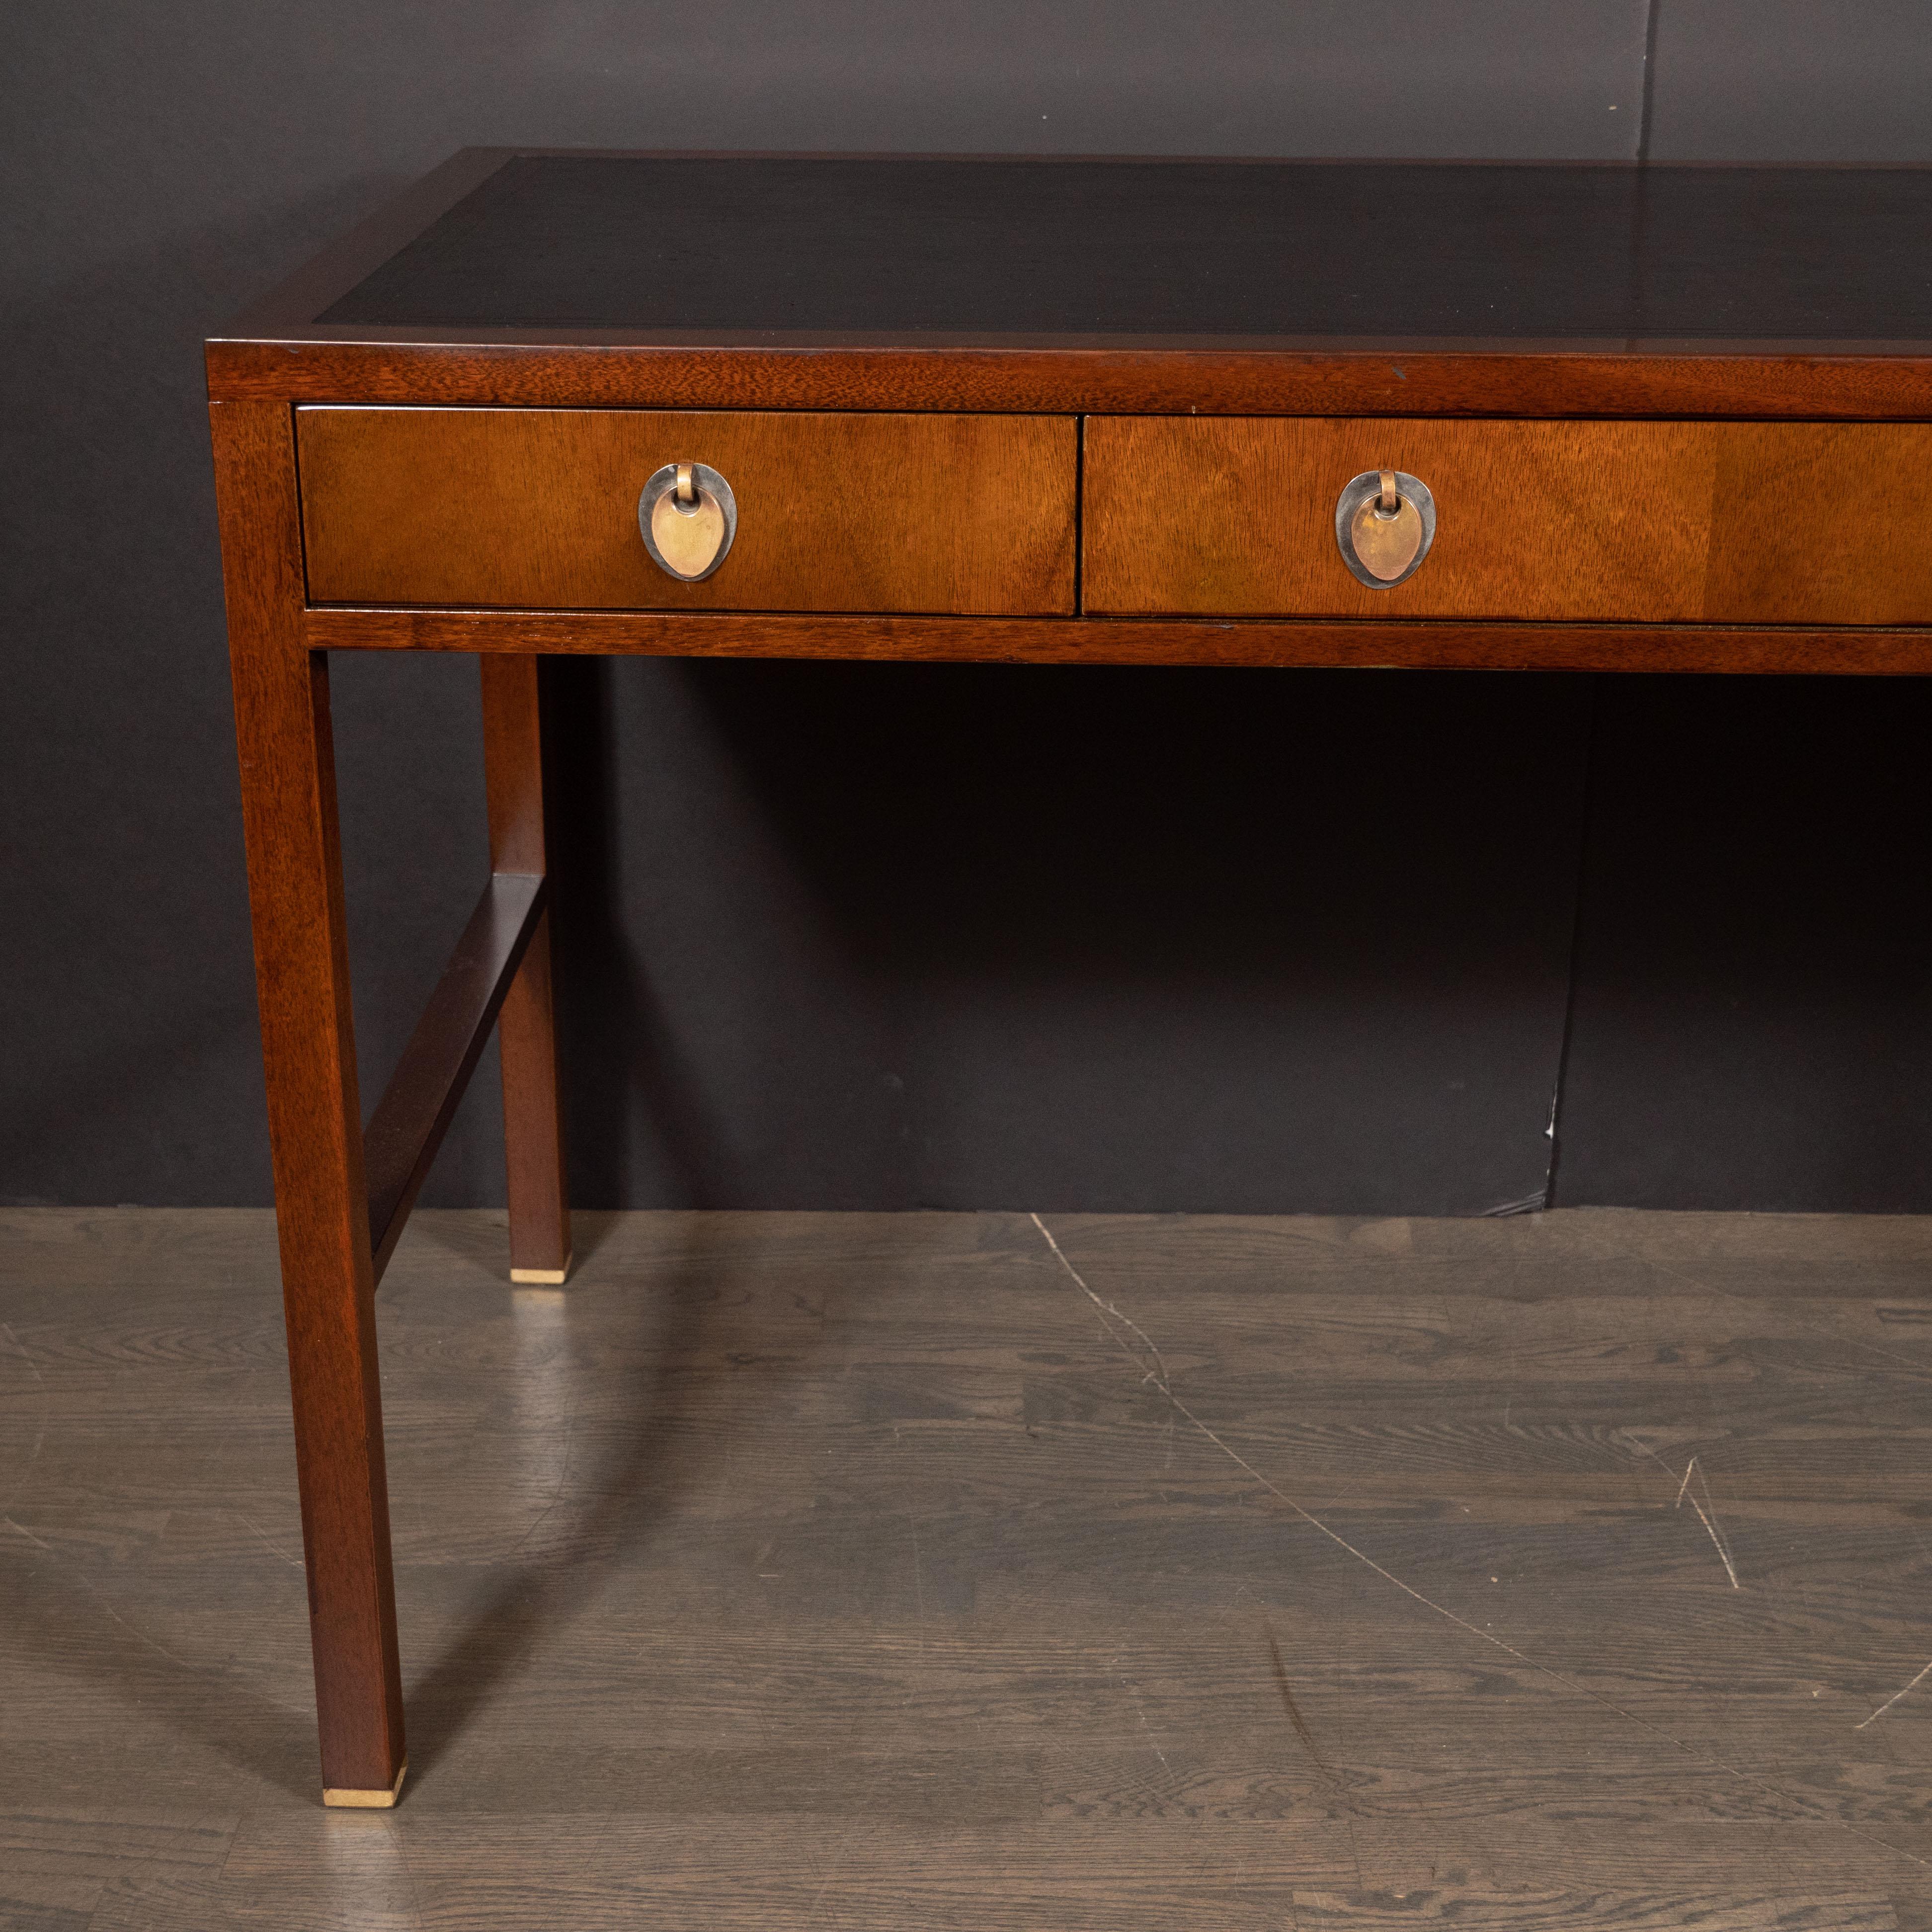 American Mid-Century Modern Walnut and Black Leather Desk by Edward Wormley for Dunbar